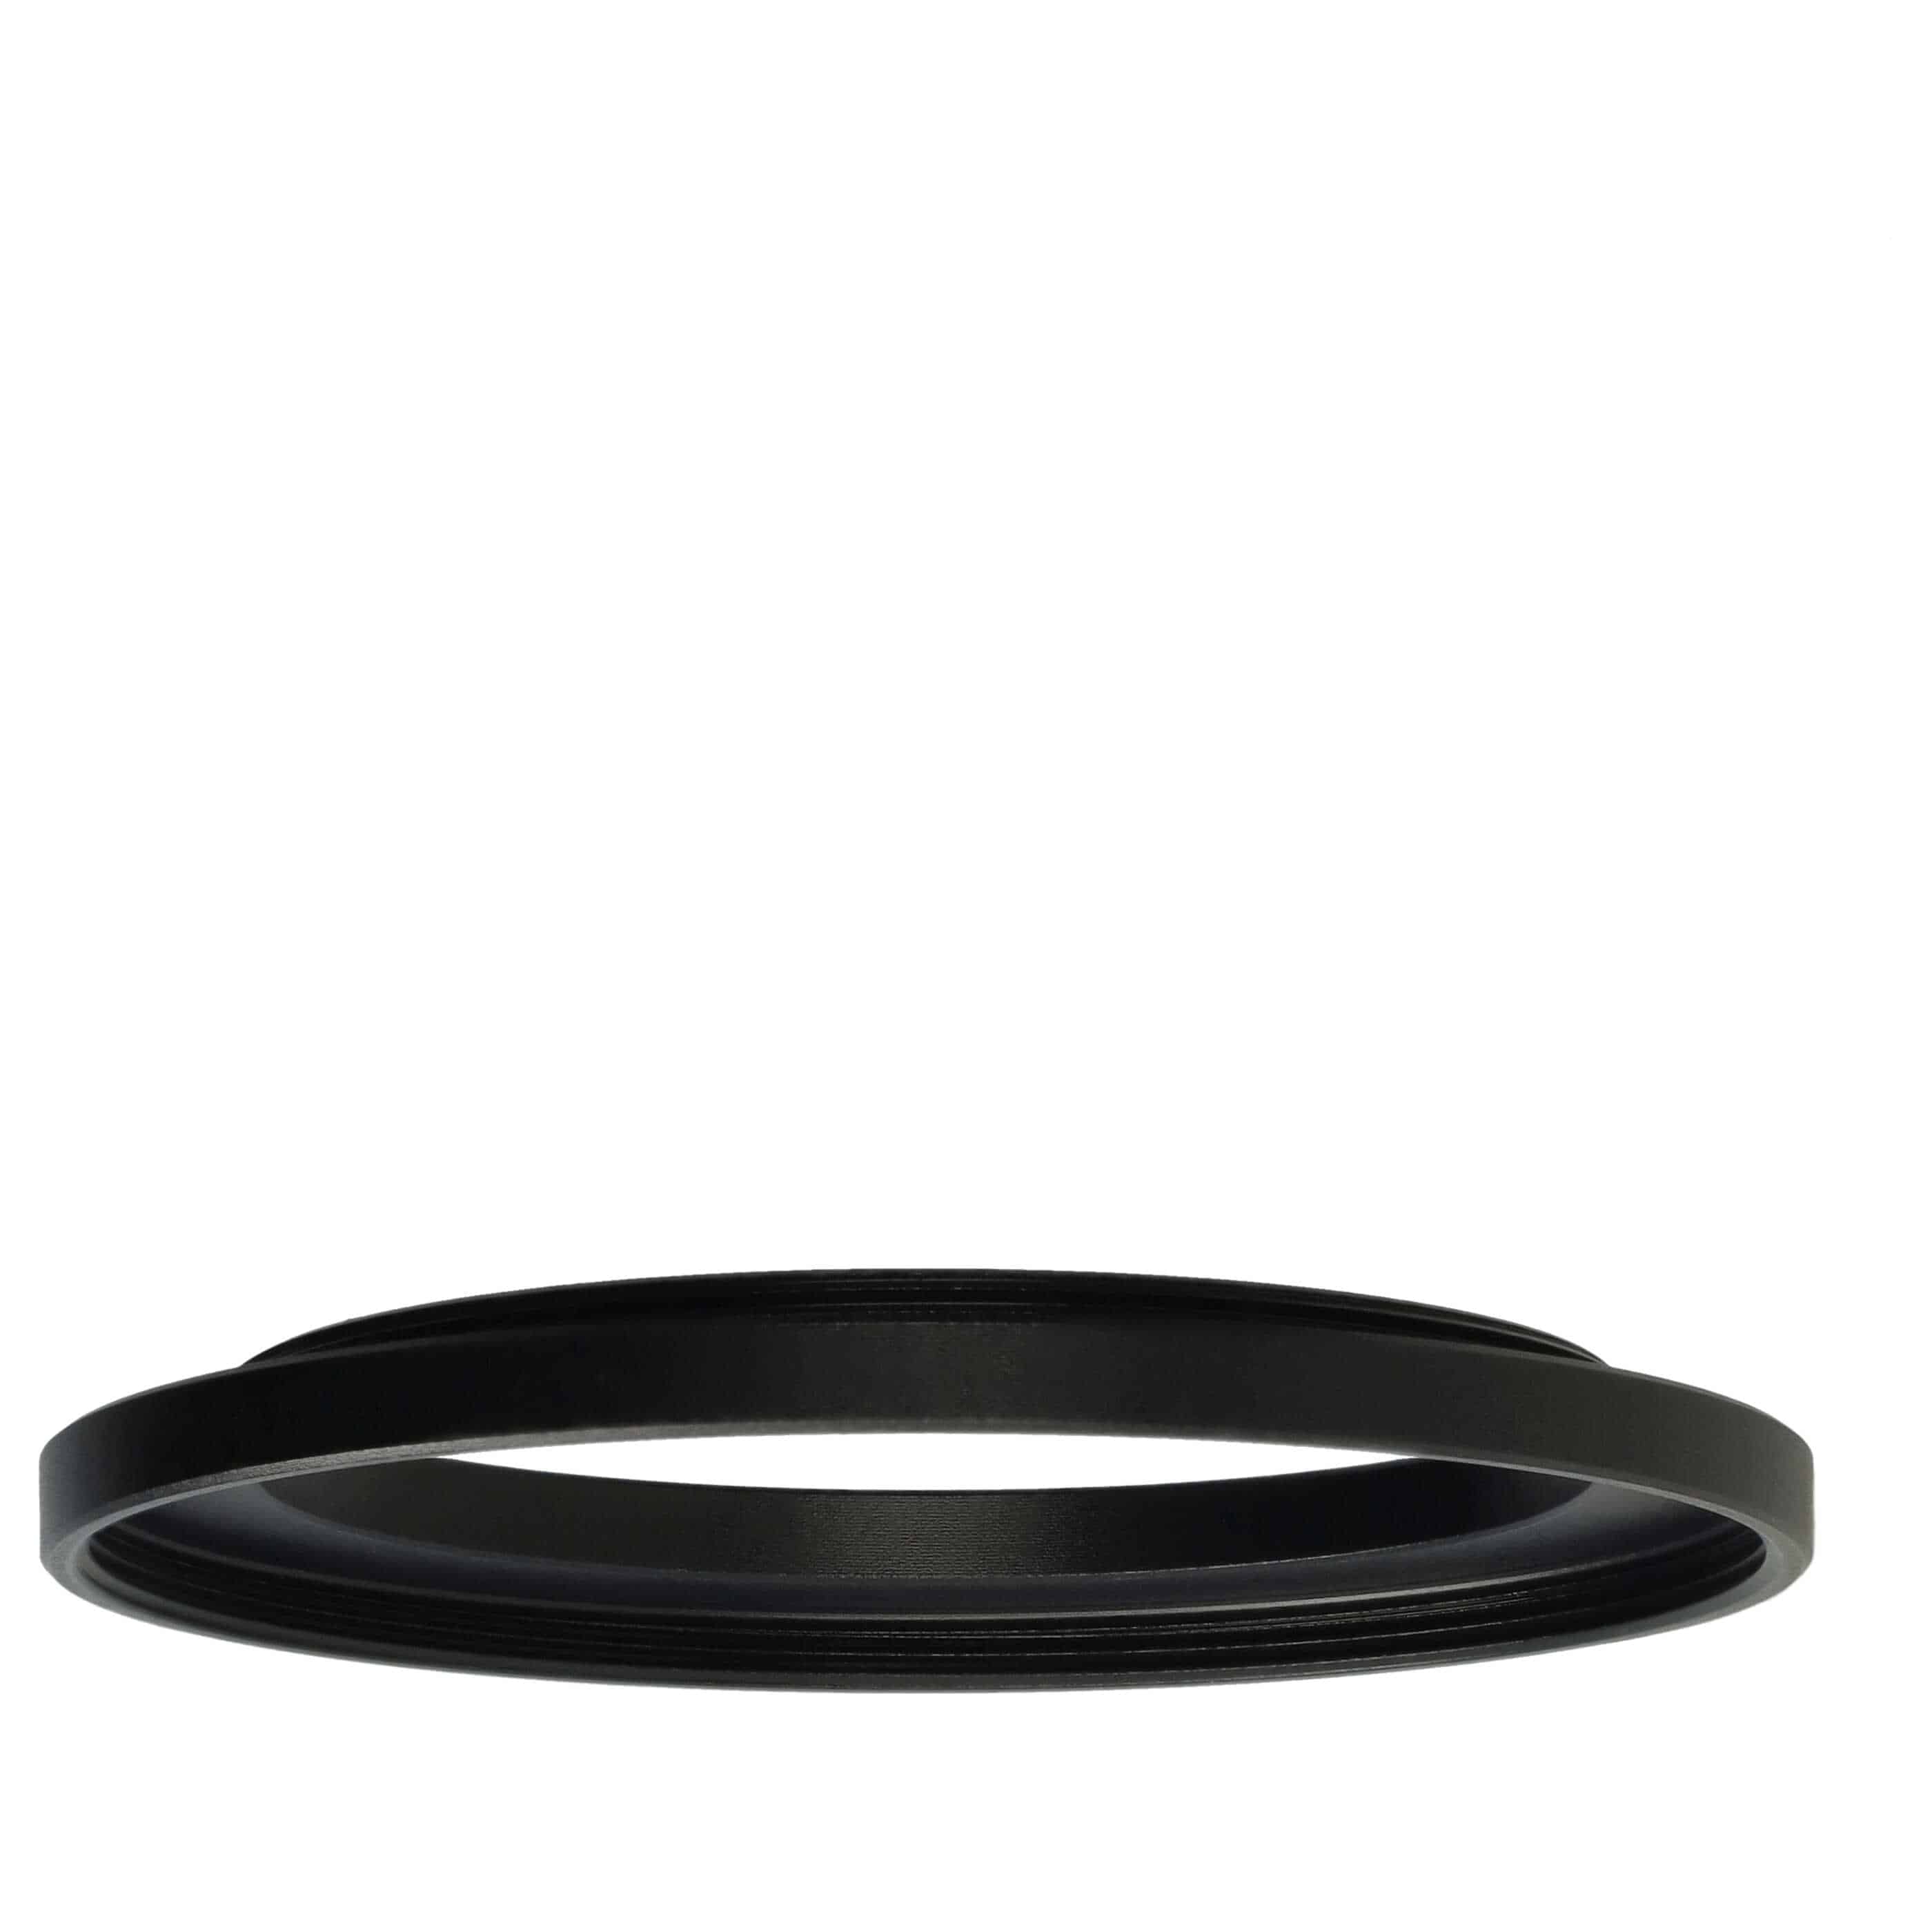 Step-Up-Ring Adapter 46 mm auf 55 mm passend für diverse Kamera-Objektive - Filteradapter